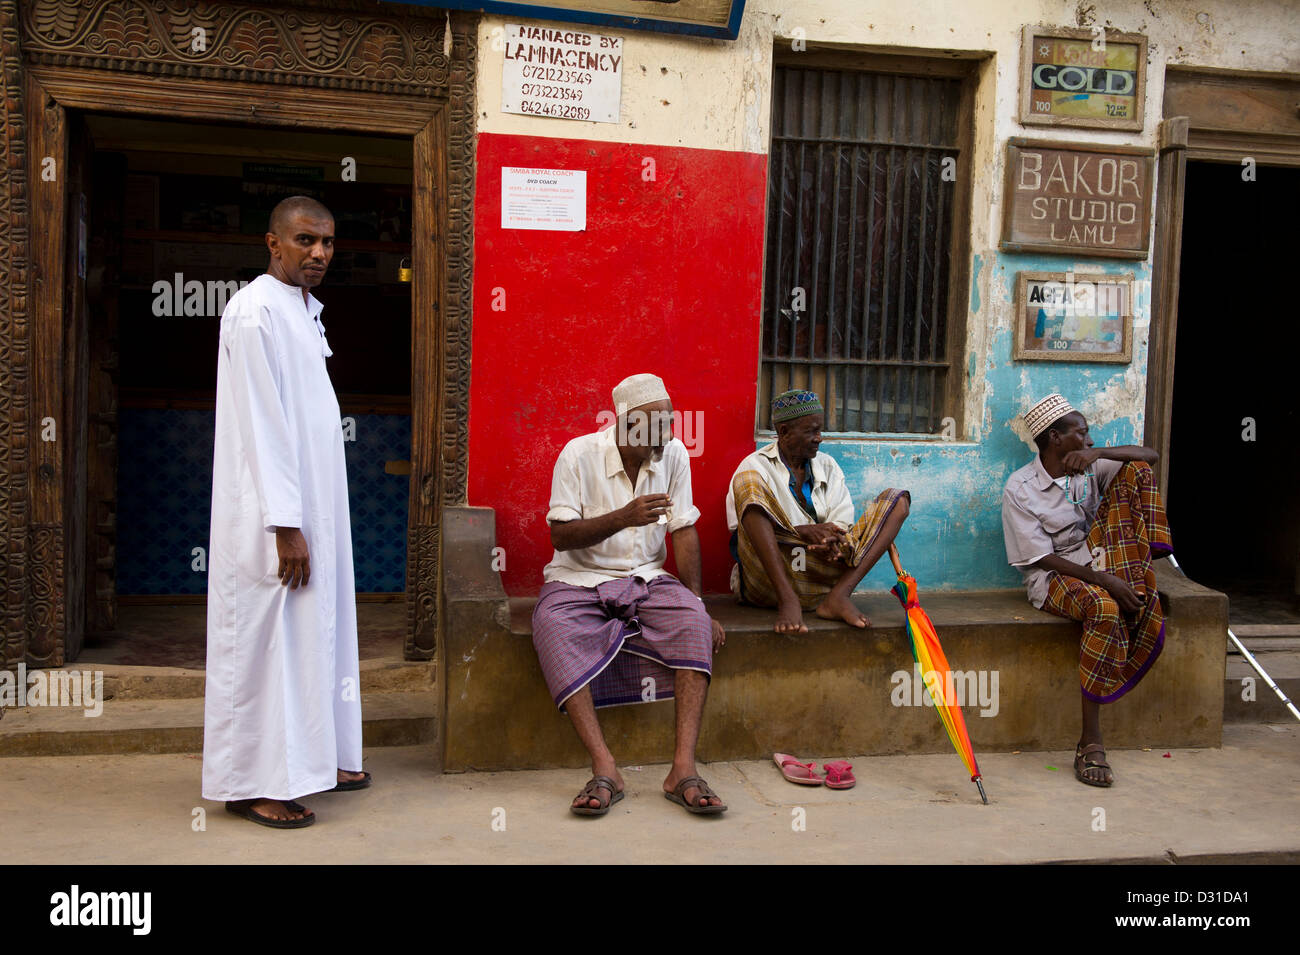 Hommes parlant dans l'allée, scène de rue, Lamu, archipel de Lamu, Kenya Banque D'Images